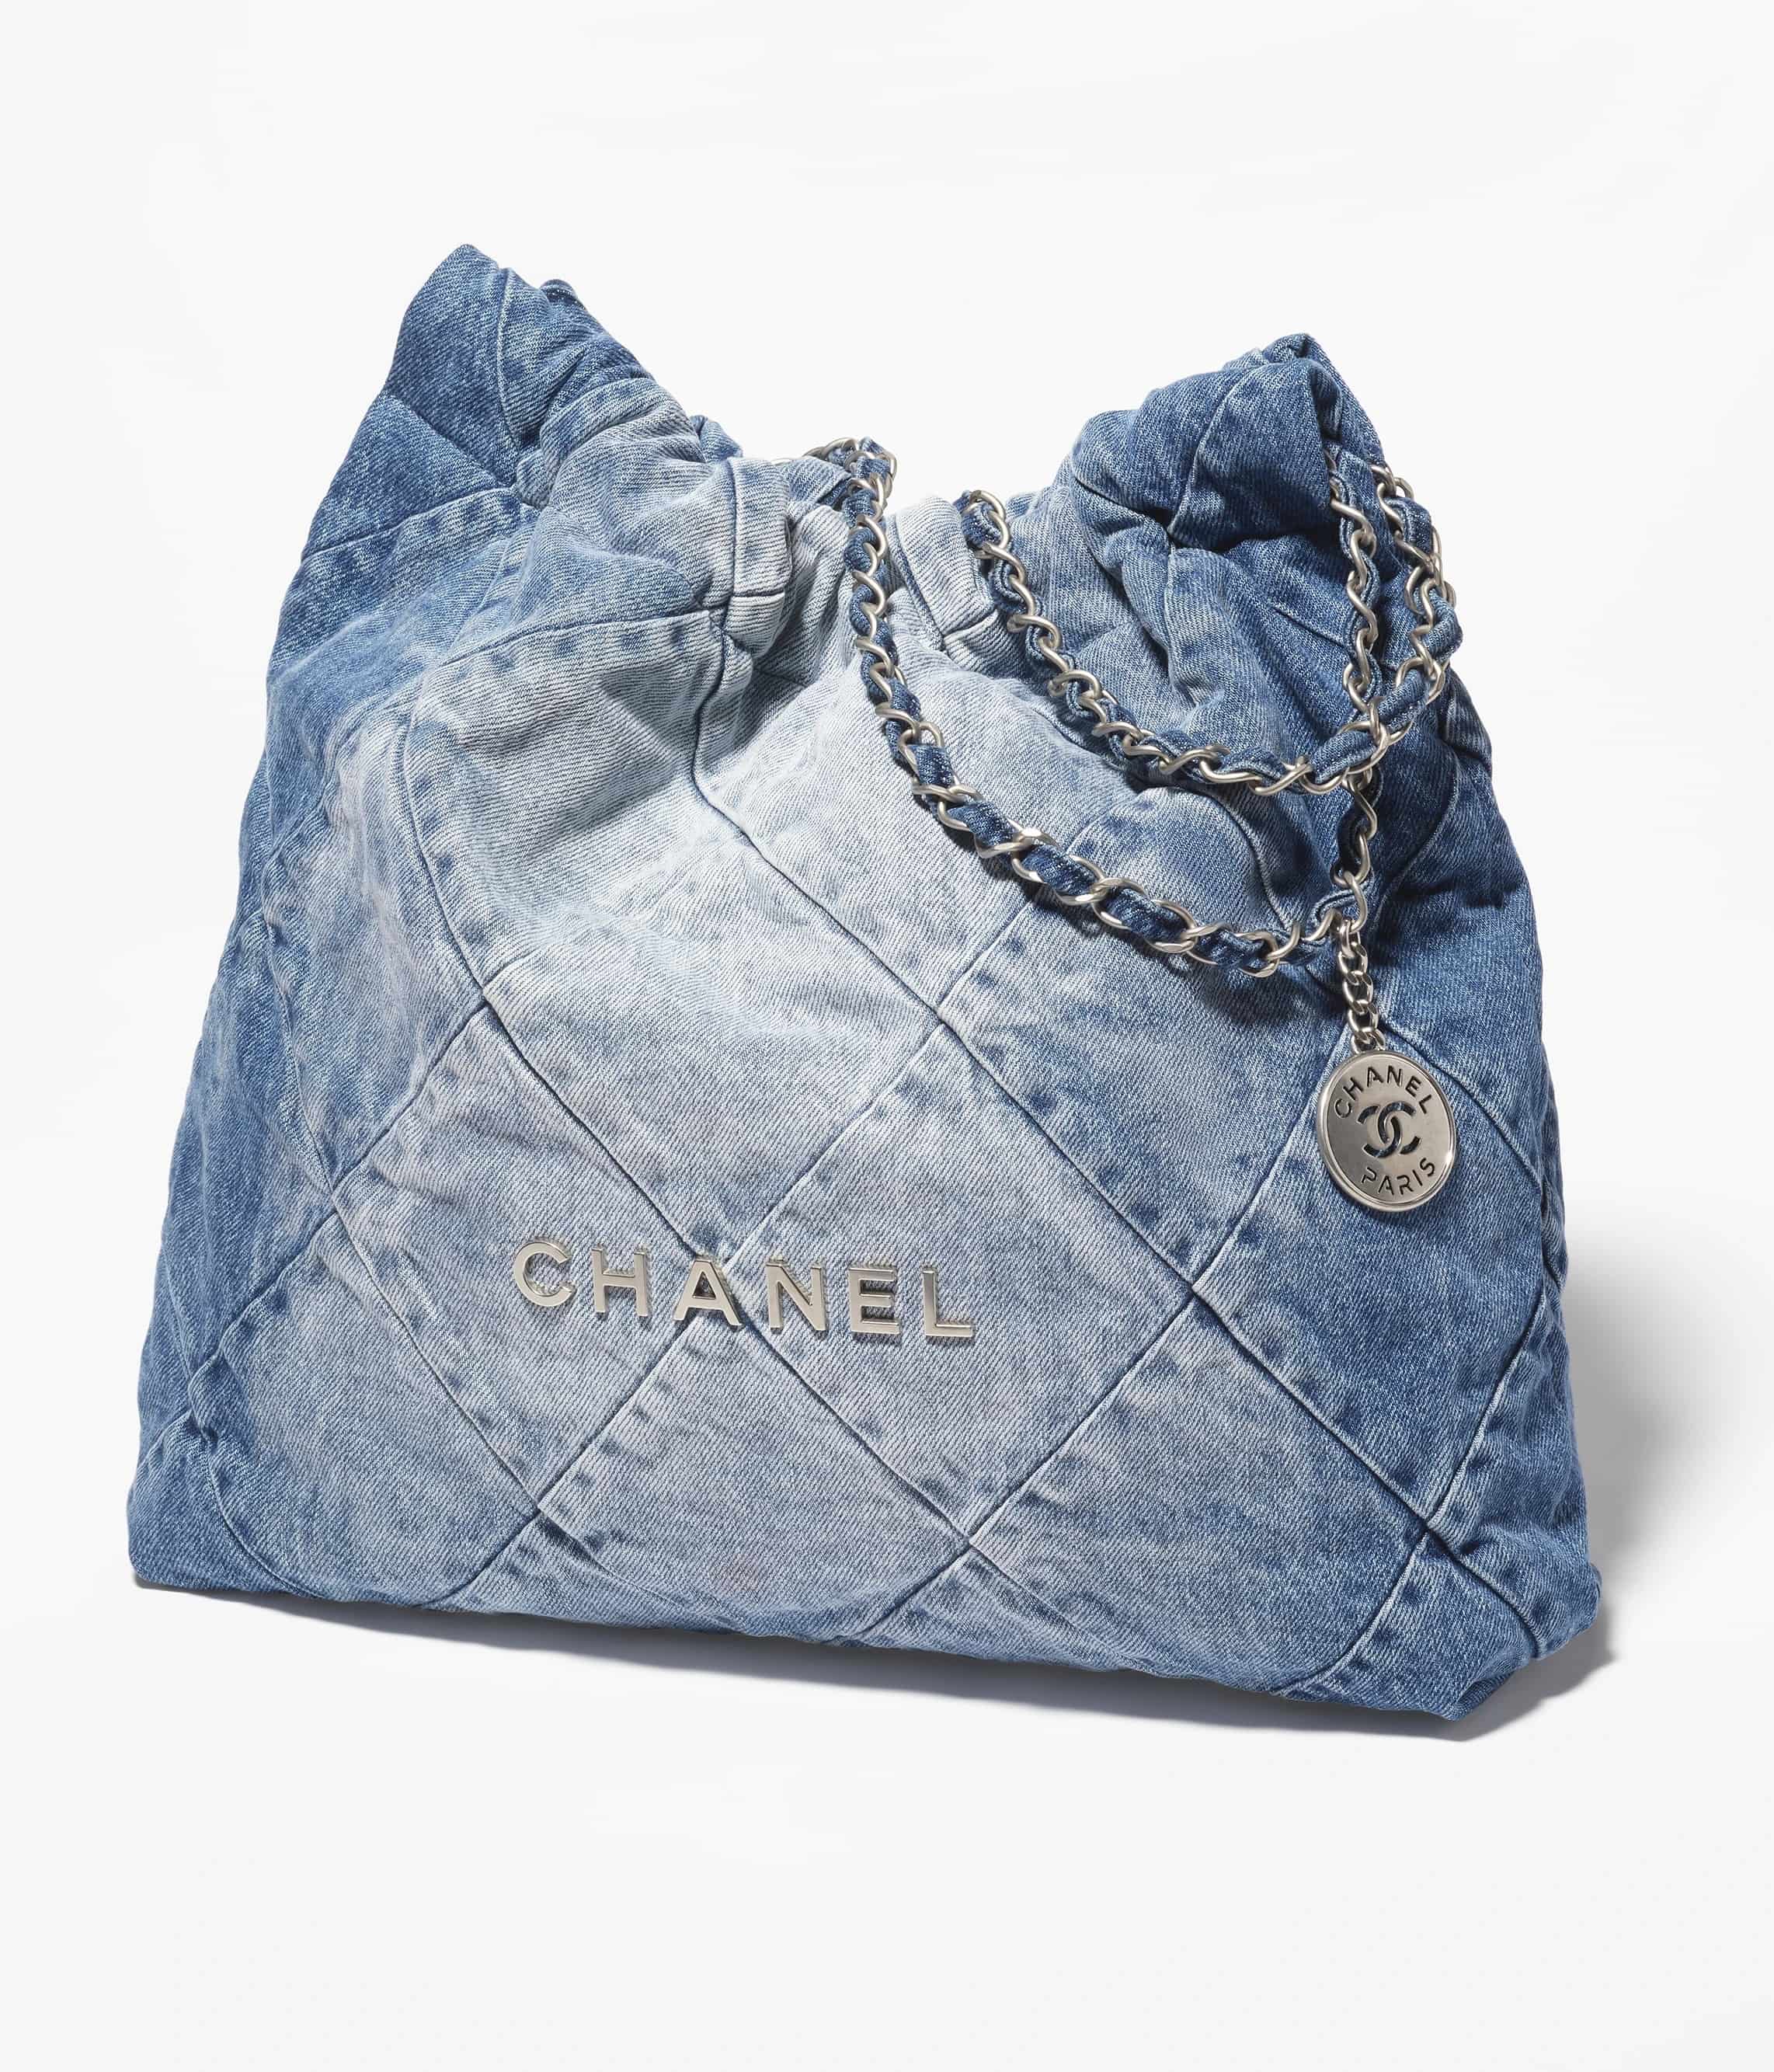 Mua Túi Xách Chanel Mini Coco Handle Flap Bag In Green Caviar Màu Xanh Lá   Chanel  Mua tại Vua Hàng Hiệu h030805